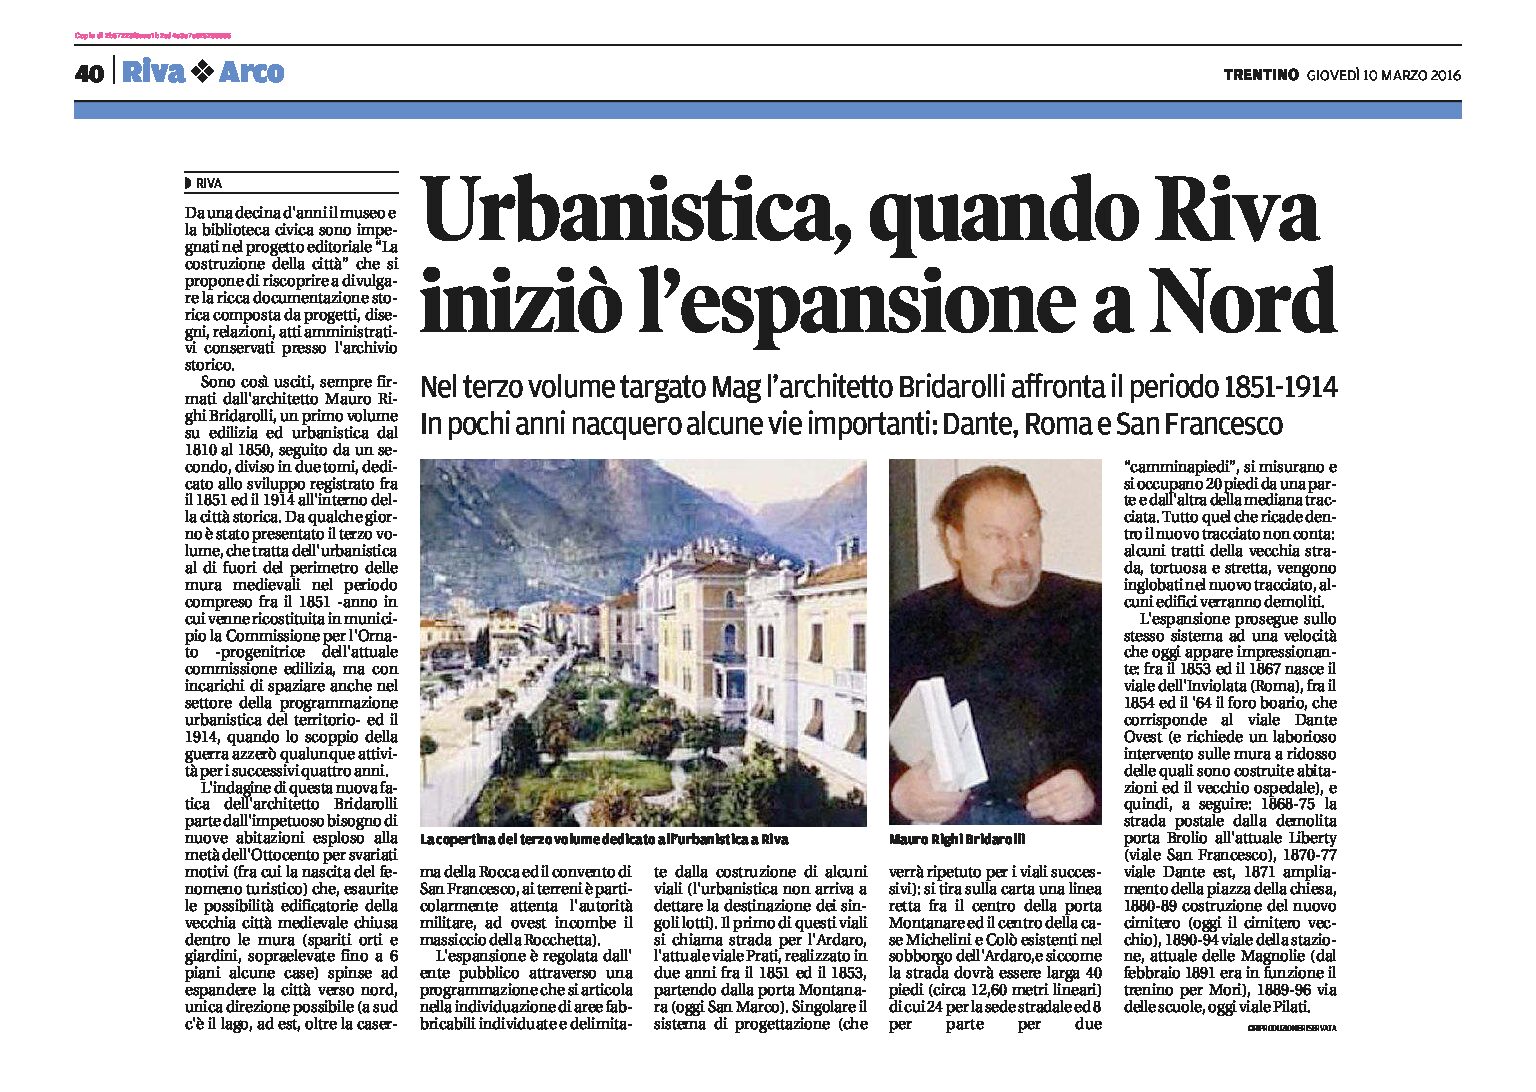 Riva: volume dell’arch Bridarolli sull’espansione urbanistica, tra il 1851 e il 1914, a Nord della città